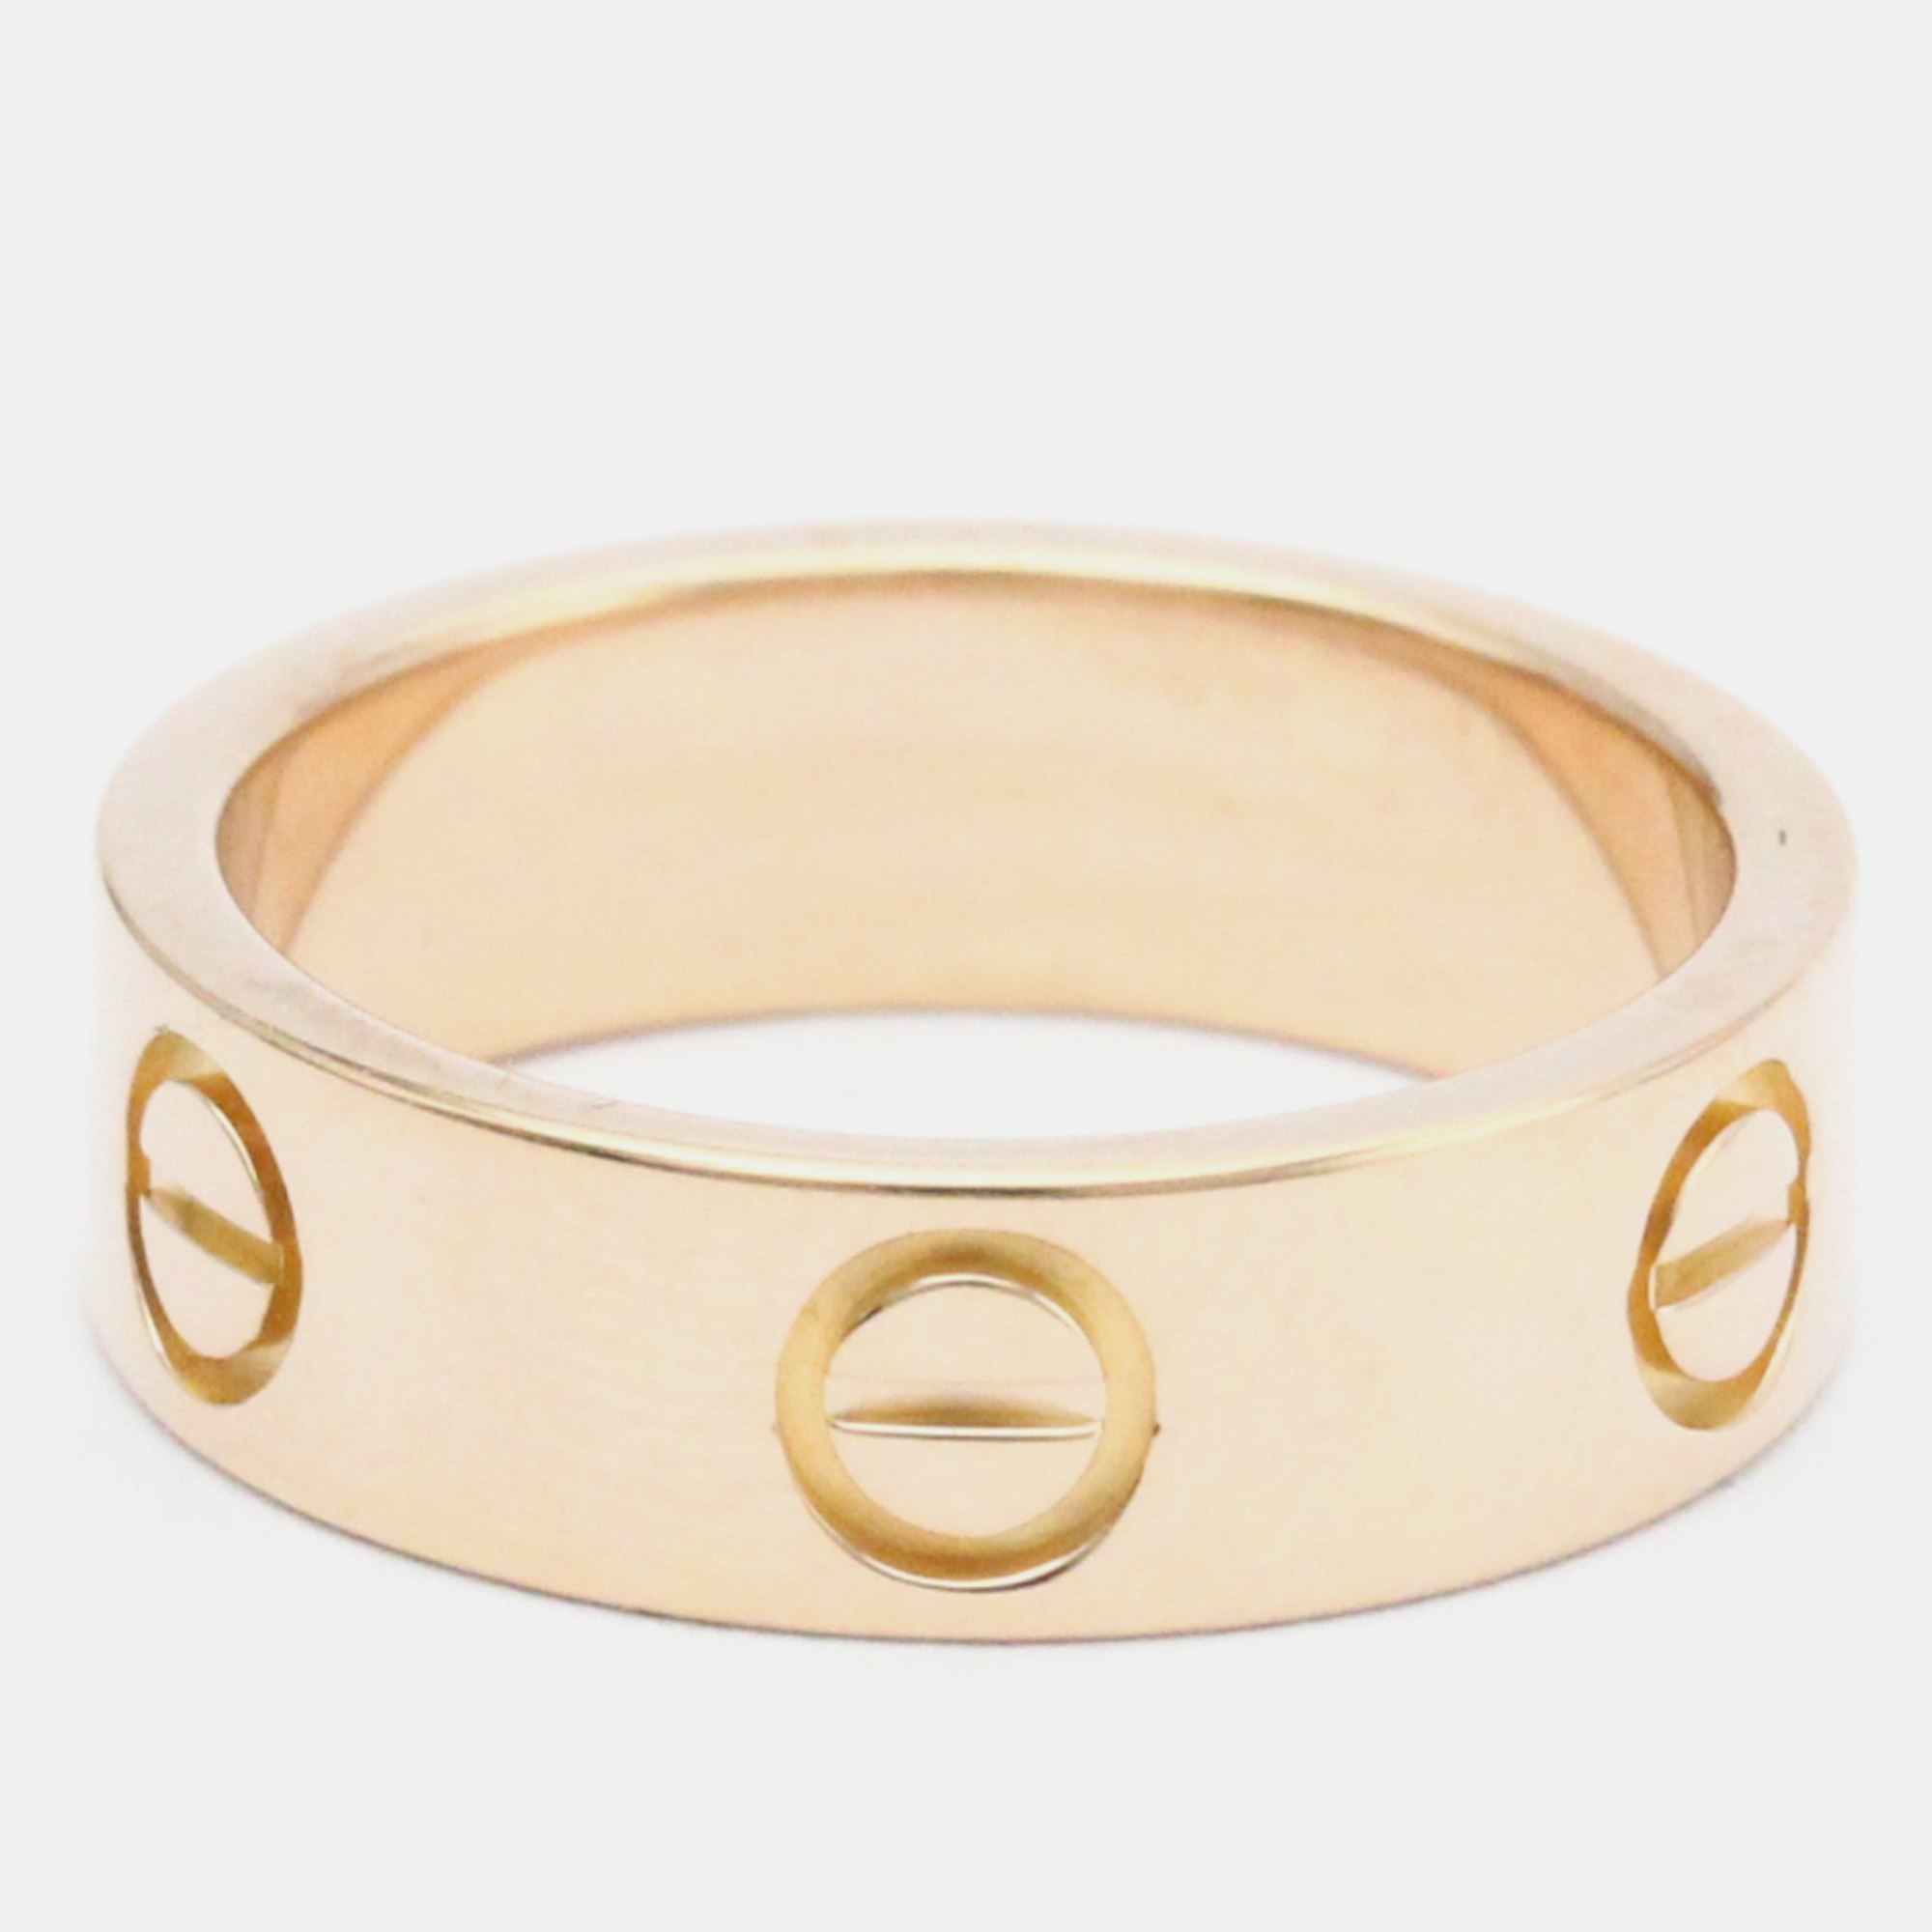 Cartier Love 18K Rose Gold Ring EU 50